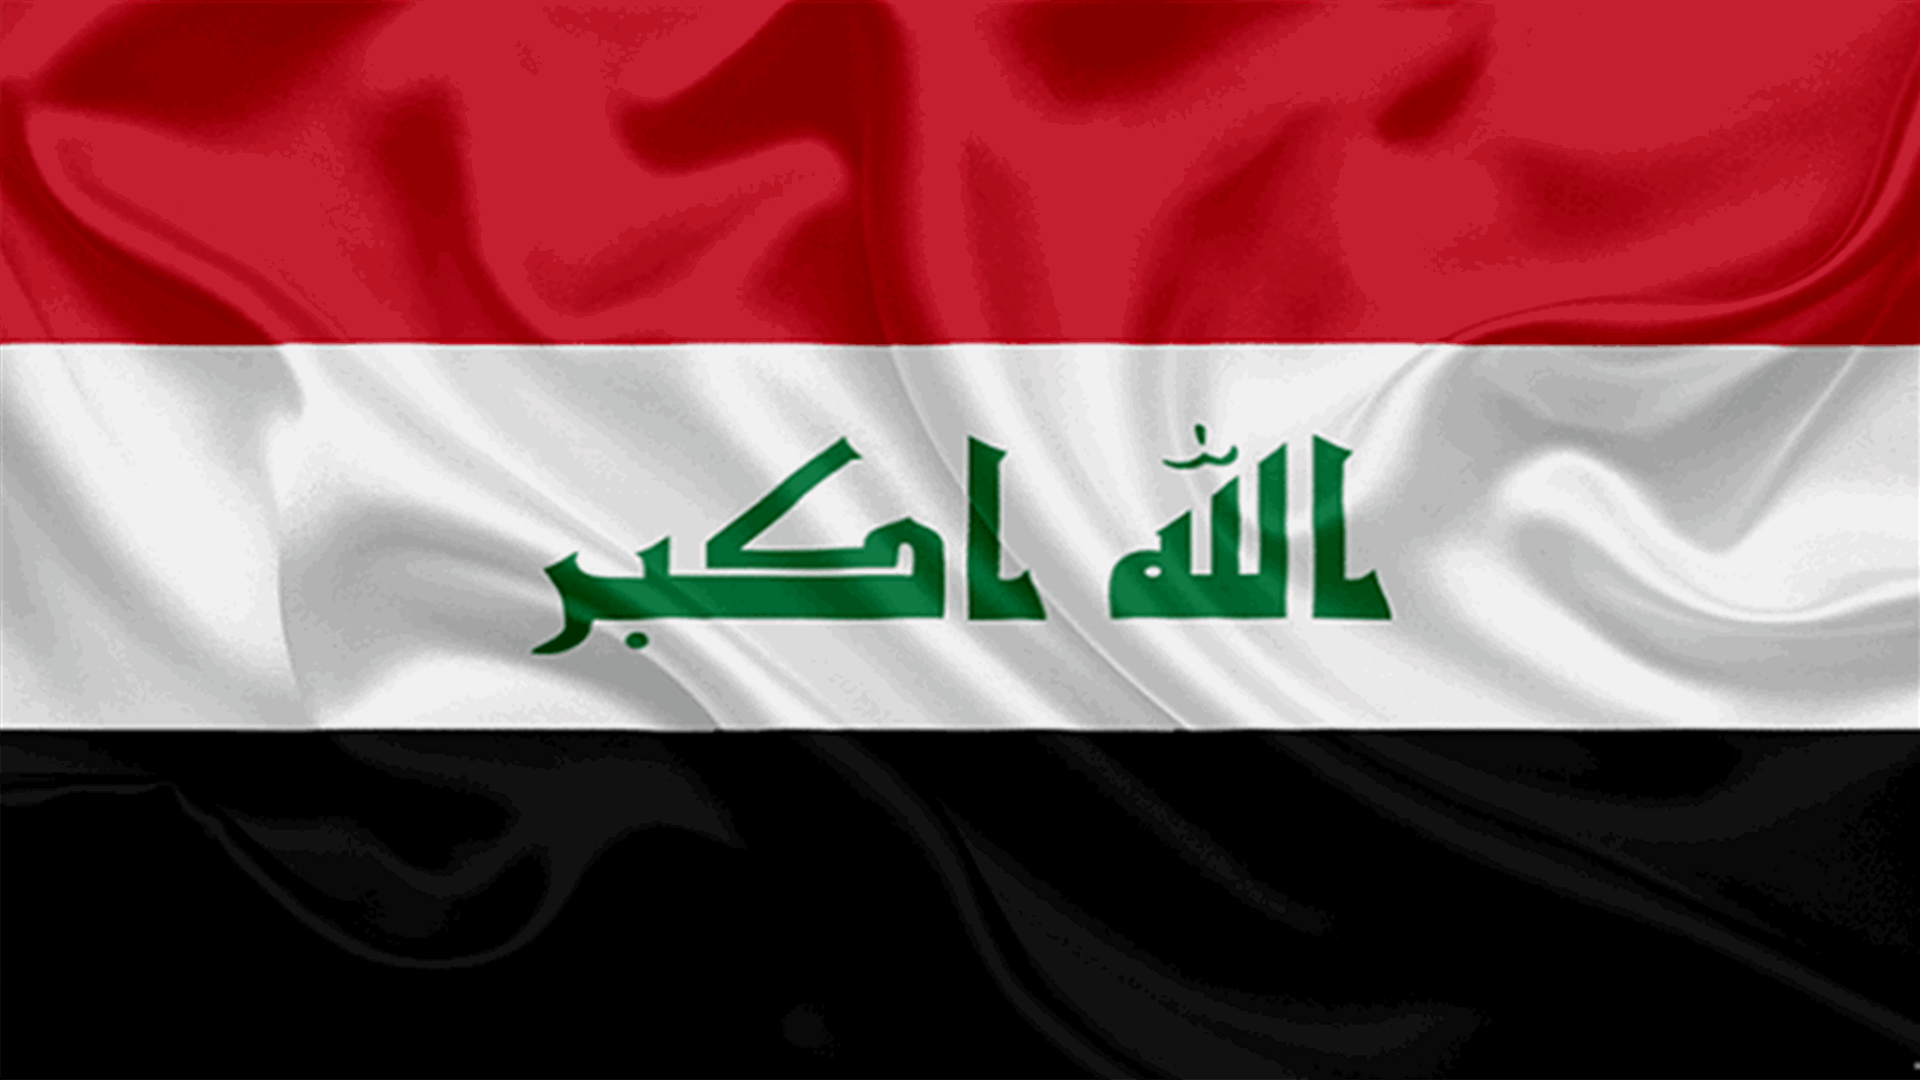 العراق يتسلم 50 جهادياً كانت تحتجزهم قوات كردية في سوريا